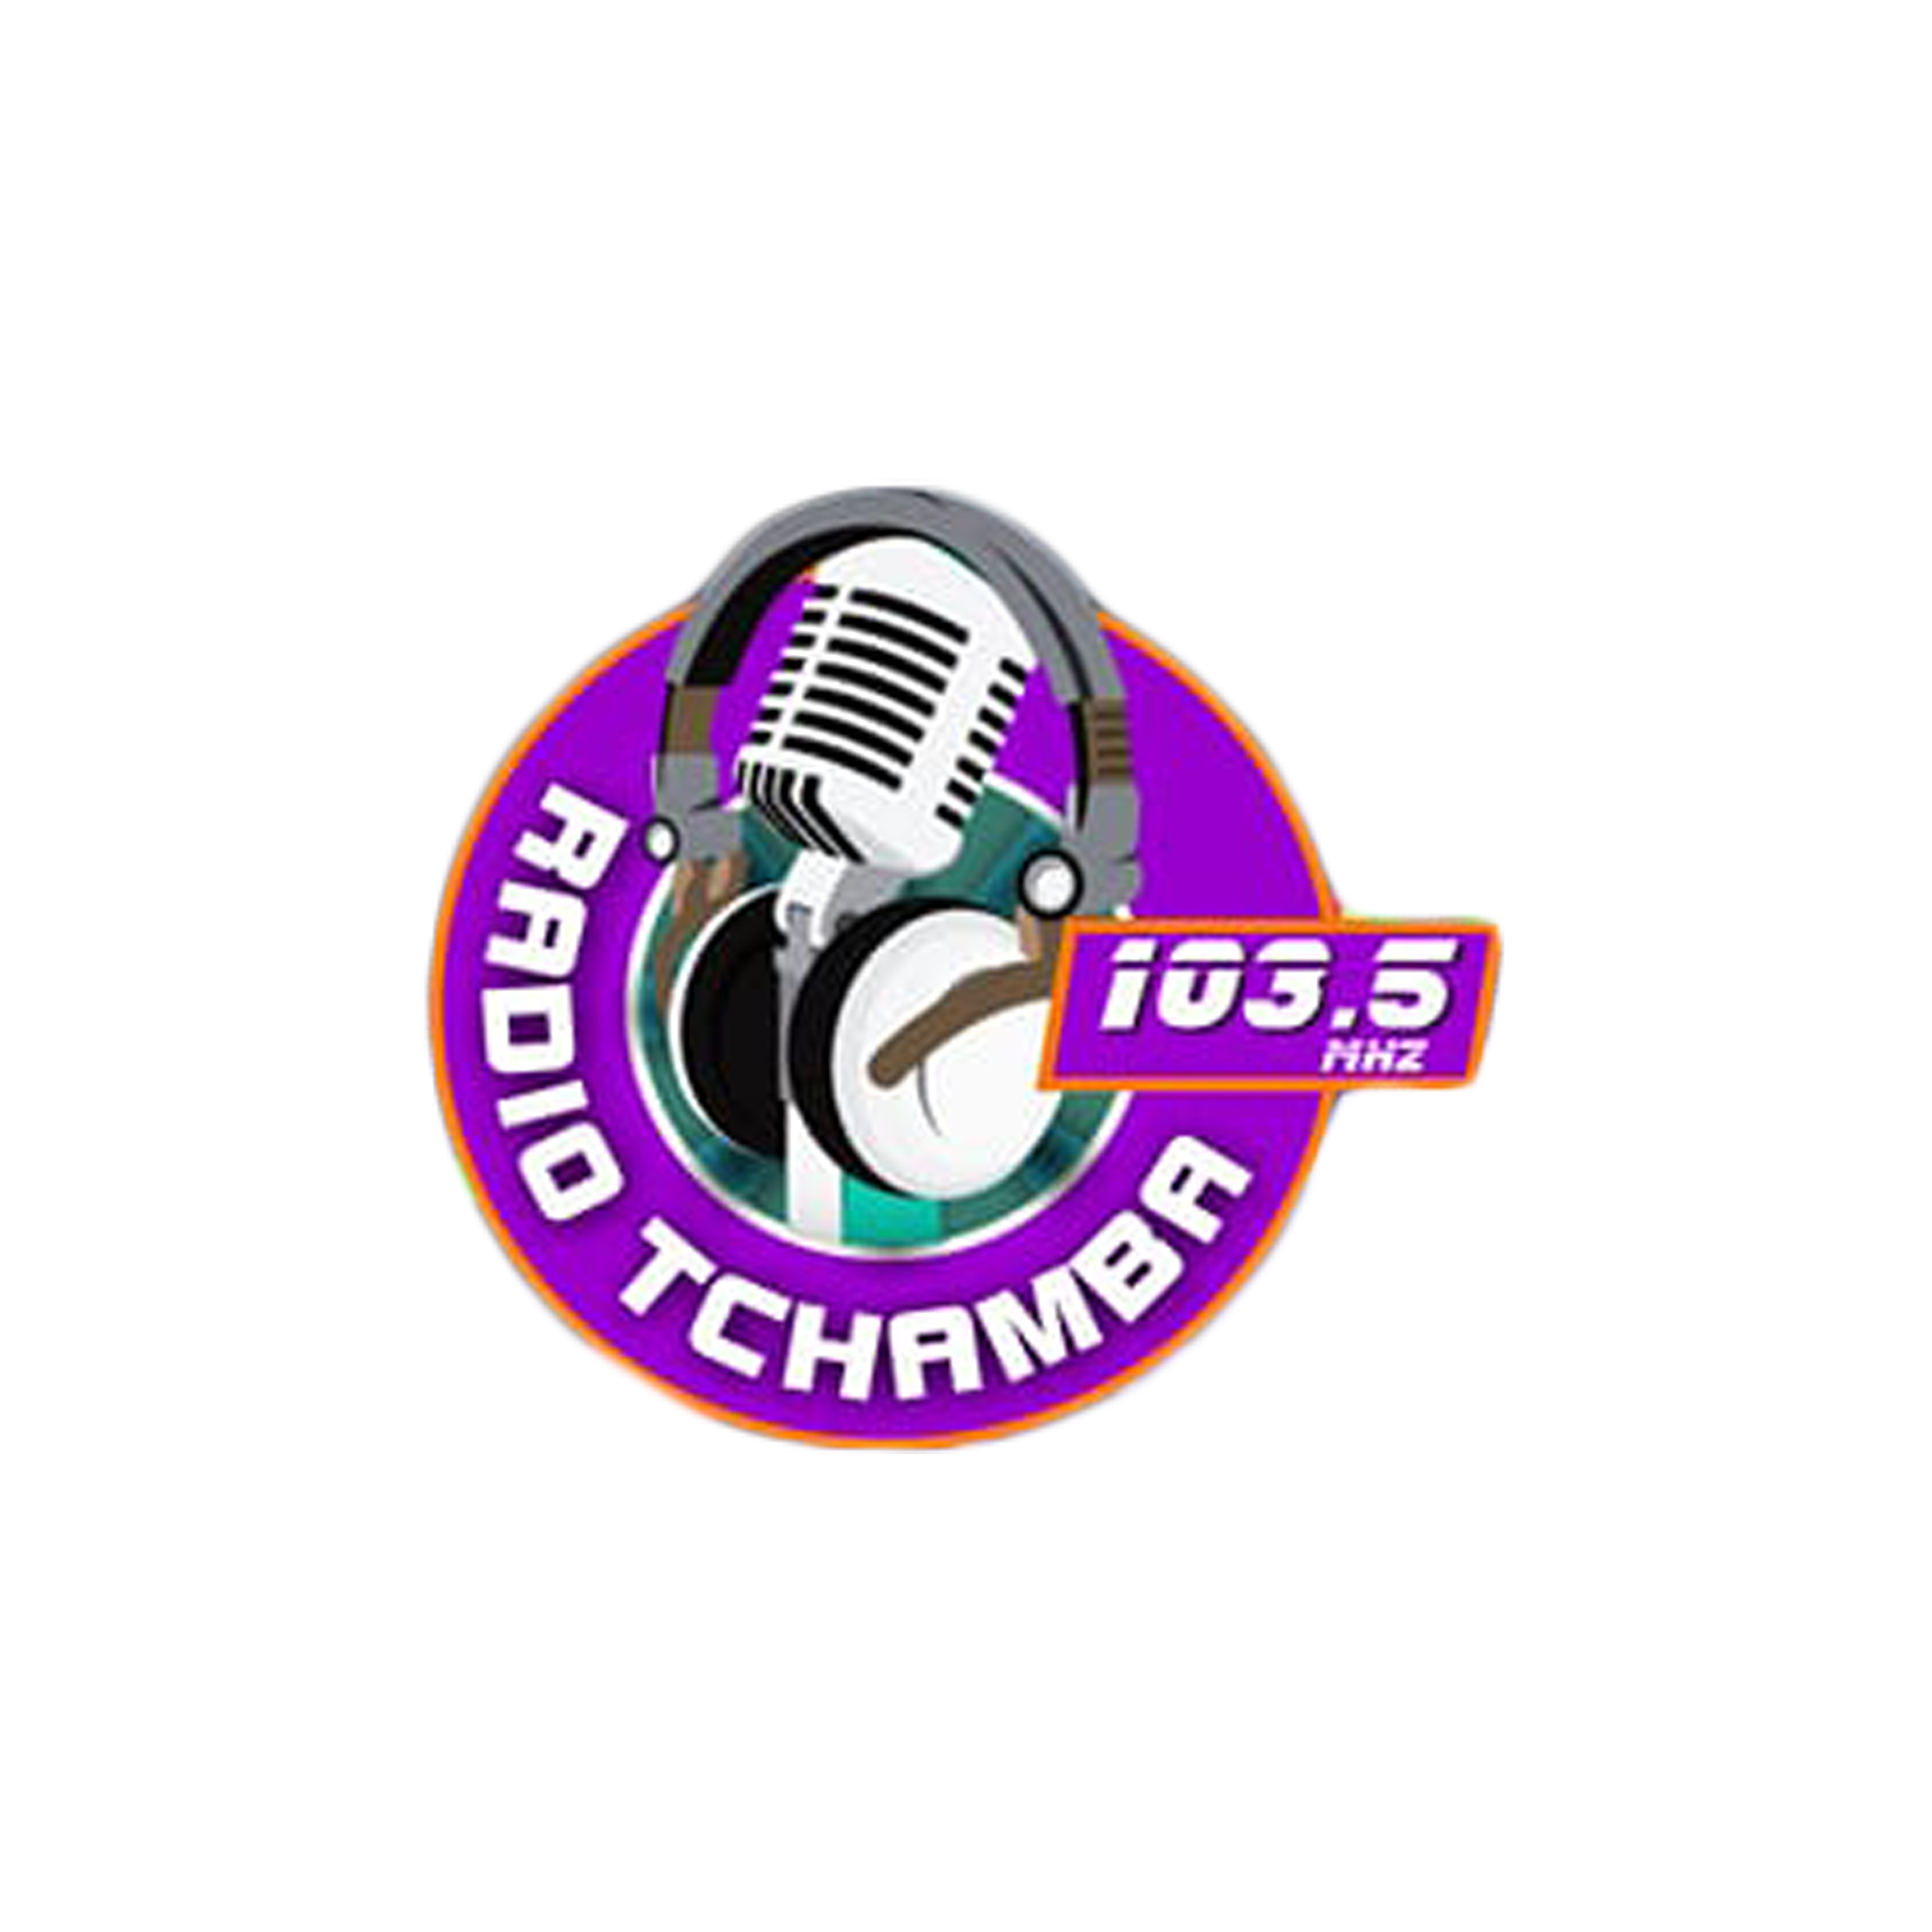 Radio Tchamba